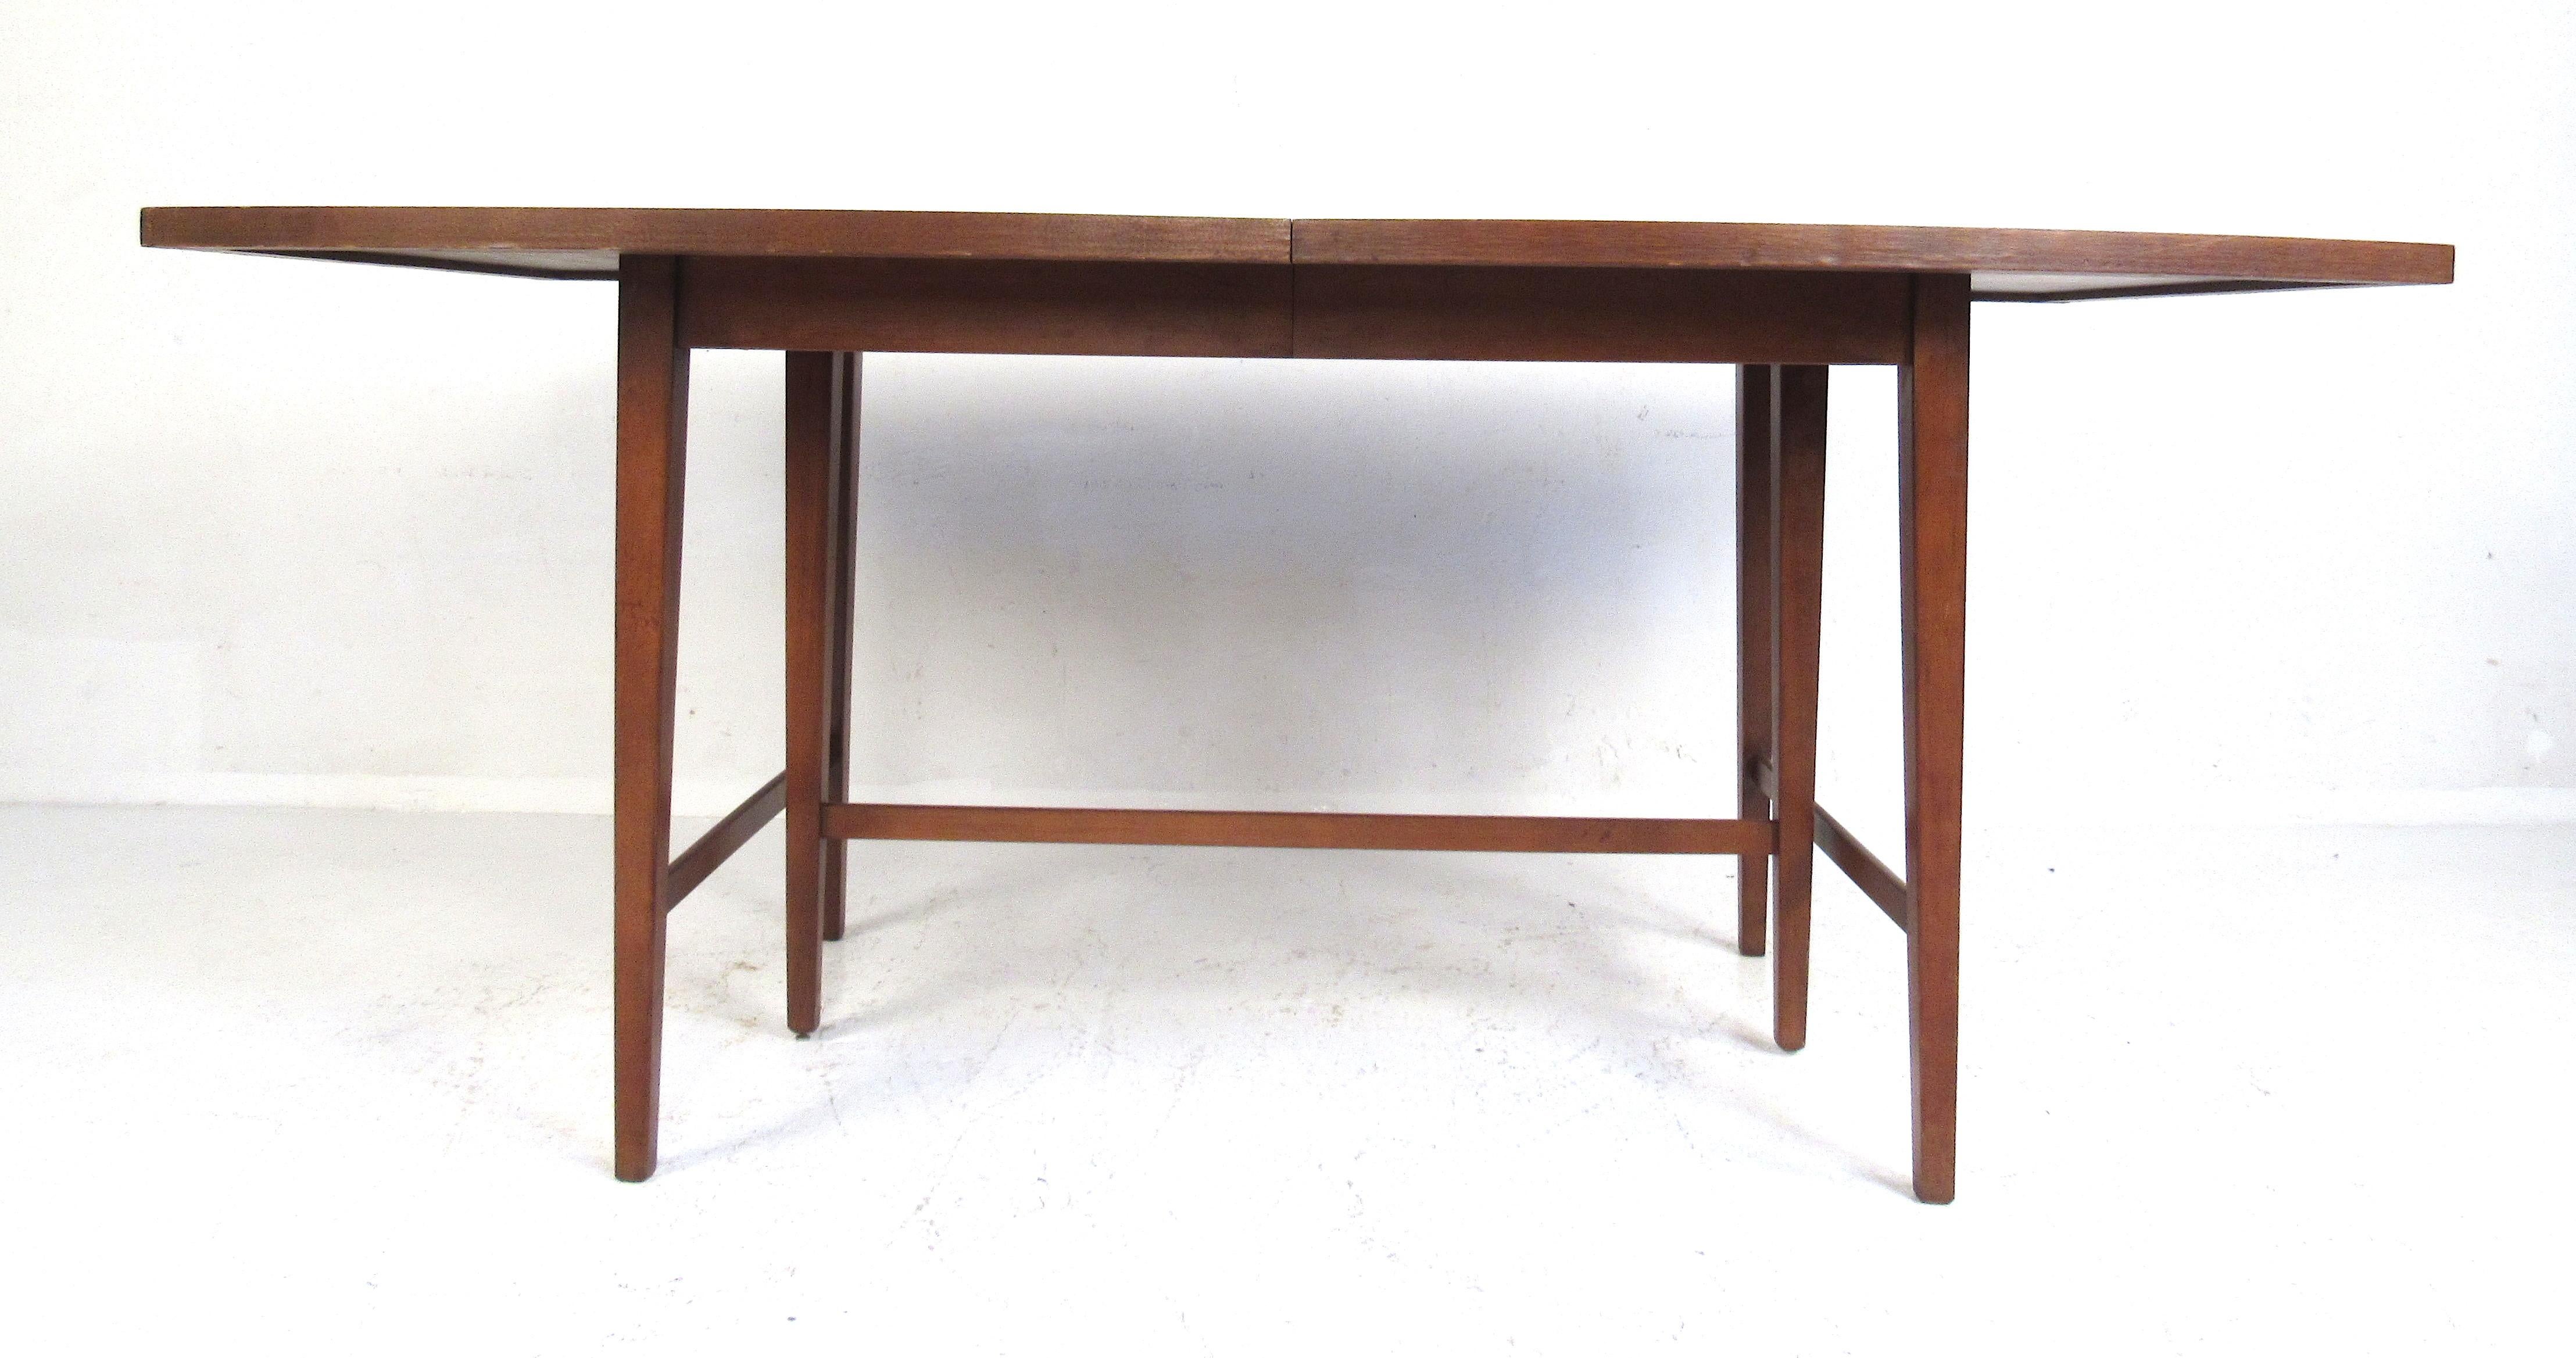 Paul McCobb Mid-Century Modern Esstisch. Ein atemberaubender Tisch, der von Paul McCobb für seine Planner Group-Linie für Winchendon Furniture entworfen wurde. Er zeichnet sich durch ein elegantes Midcentury-Design, eine einzigartige bootsförmige